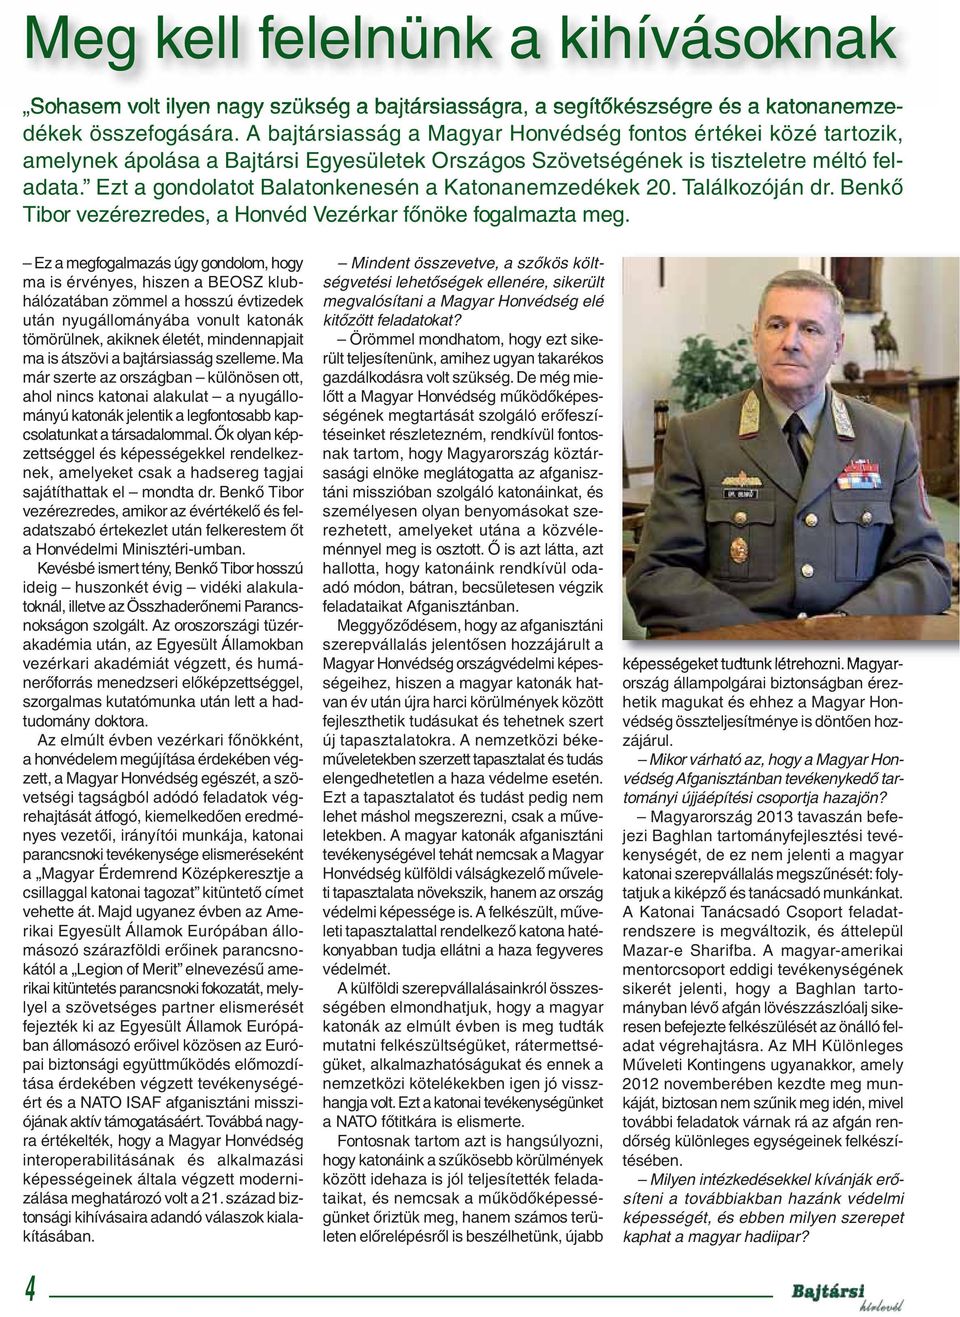 Ezt a gondolatot Balatonkenesén a Katonanemzedékek 20. Találkozóján dr. Benkő Tibor vezérezredes, a Honvéd Vezérkar főnöke fogalmazta meg.